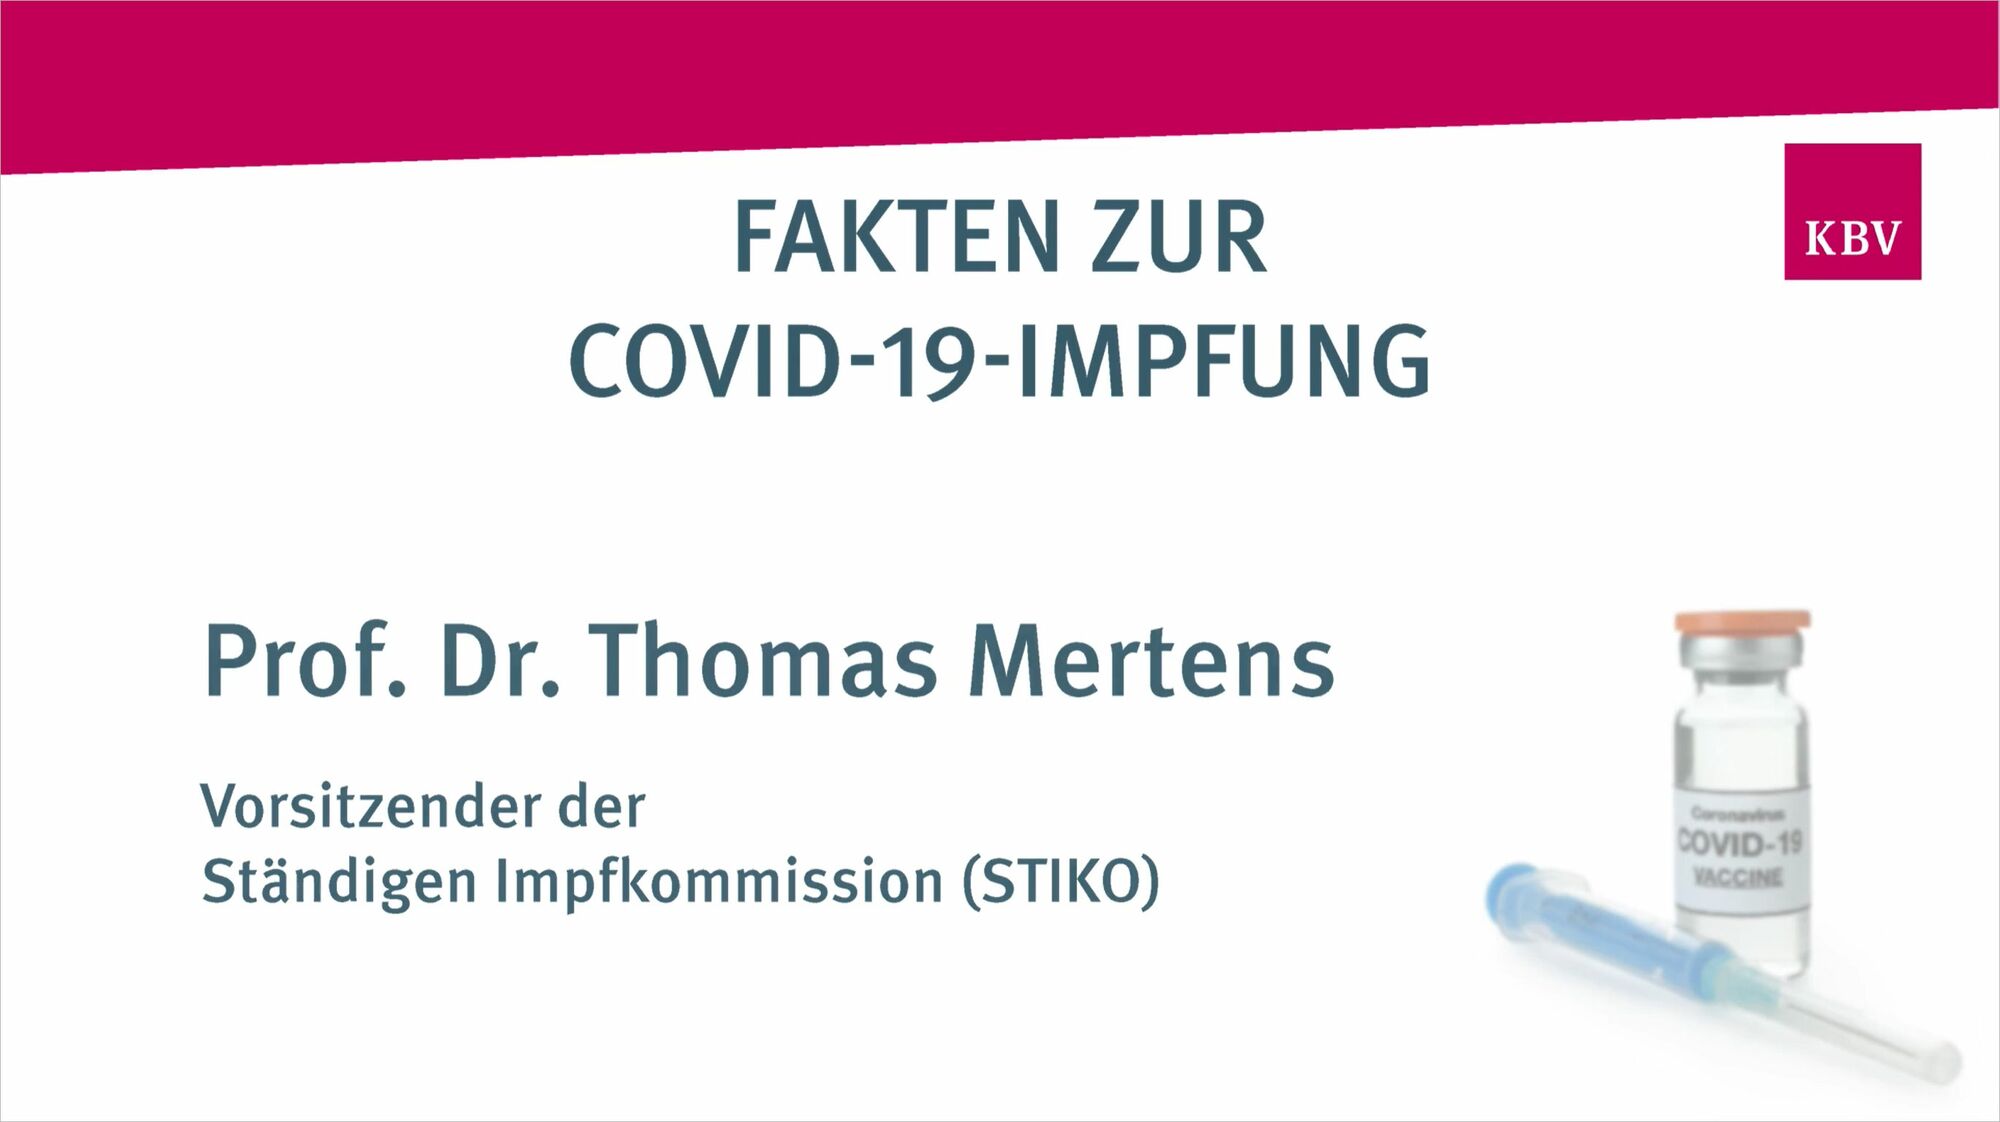 Das Vorschaubild zeigt den Titel zum folgenden Video. Dieser lautet: „Fakten zur Covid-19-Impfung. Professor Doktor Thomas Mertens. Vorsitzender der Ständigen Impfkommission (STIKO).“